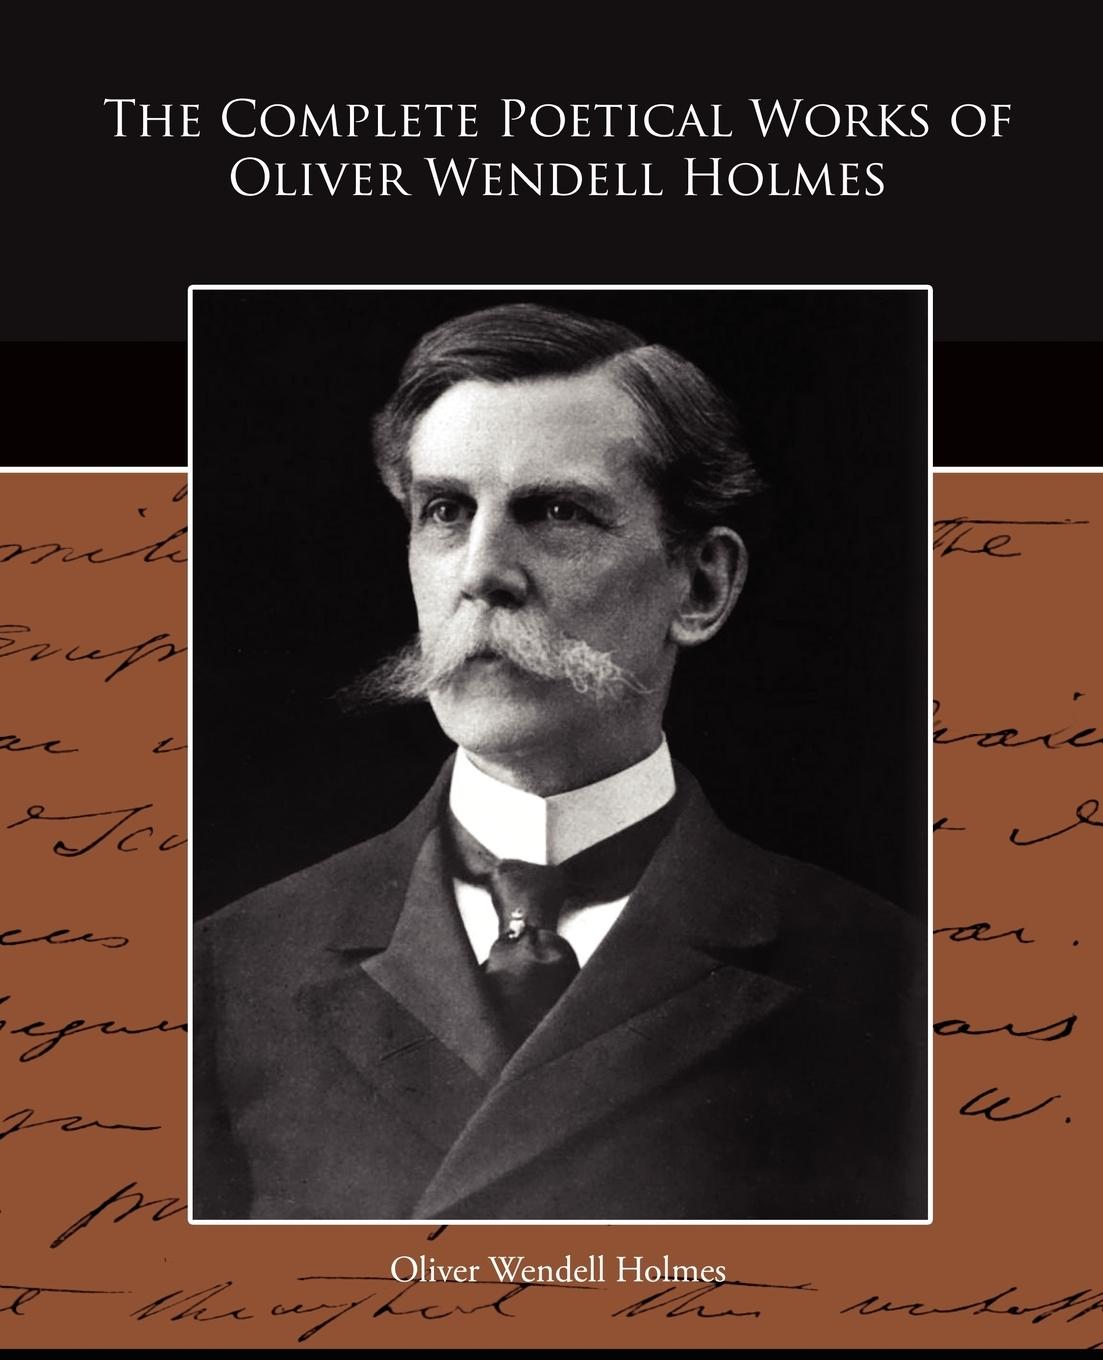 The Complete Poetical Works of Oliver Wendell Holmes - Holmes, Oliver Wendell